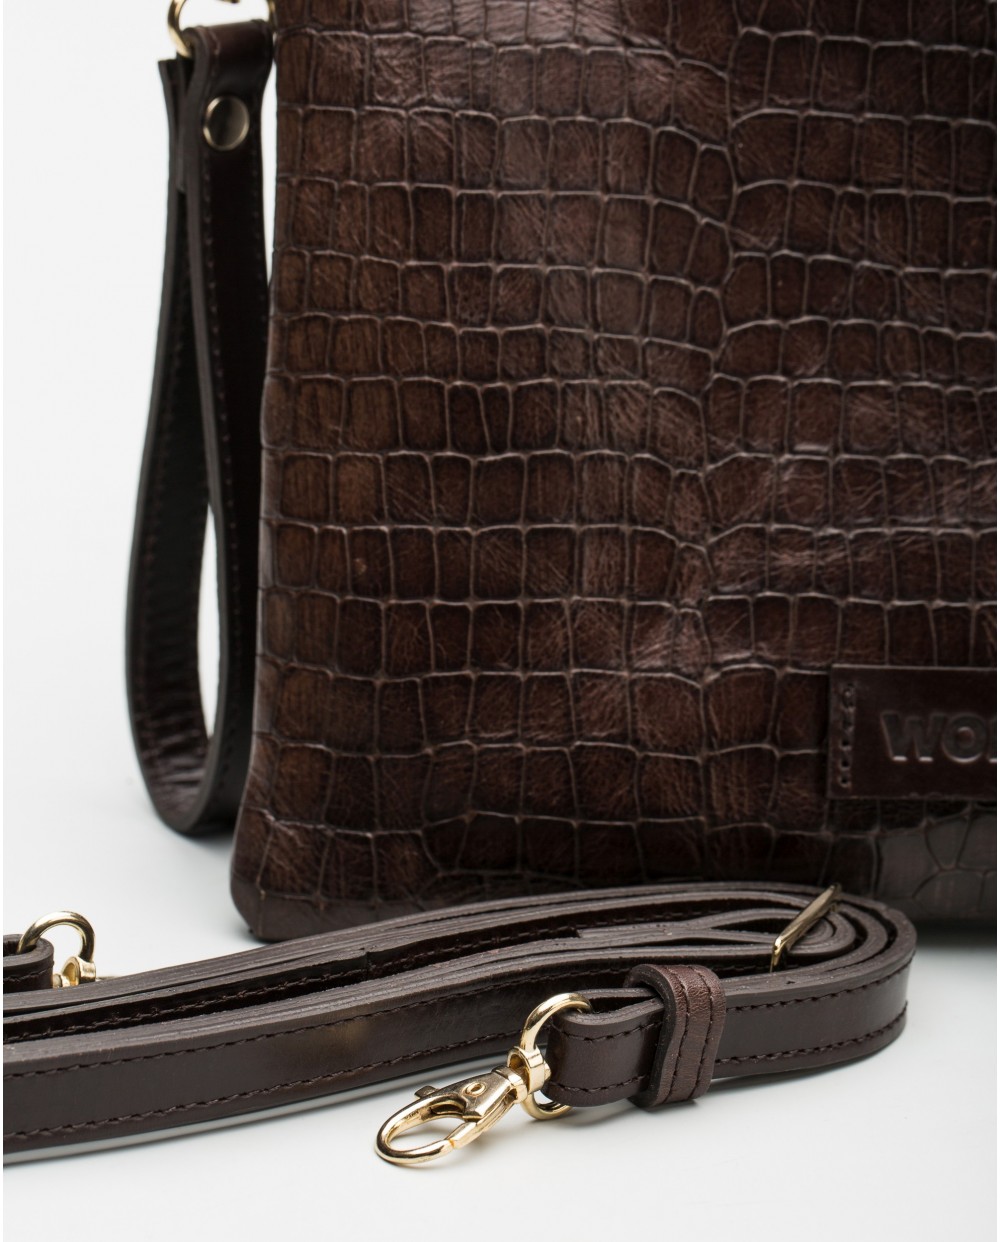 Wonders-Bags-Mock-crock handbag